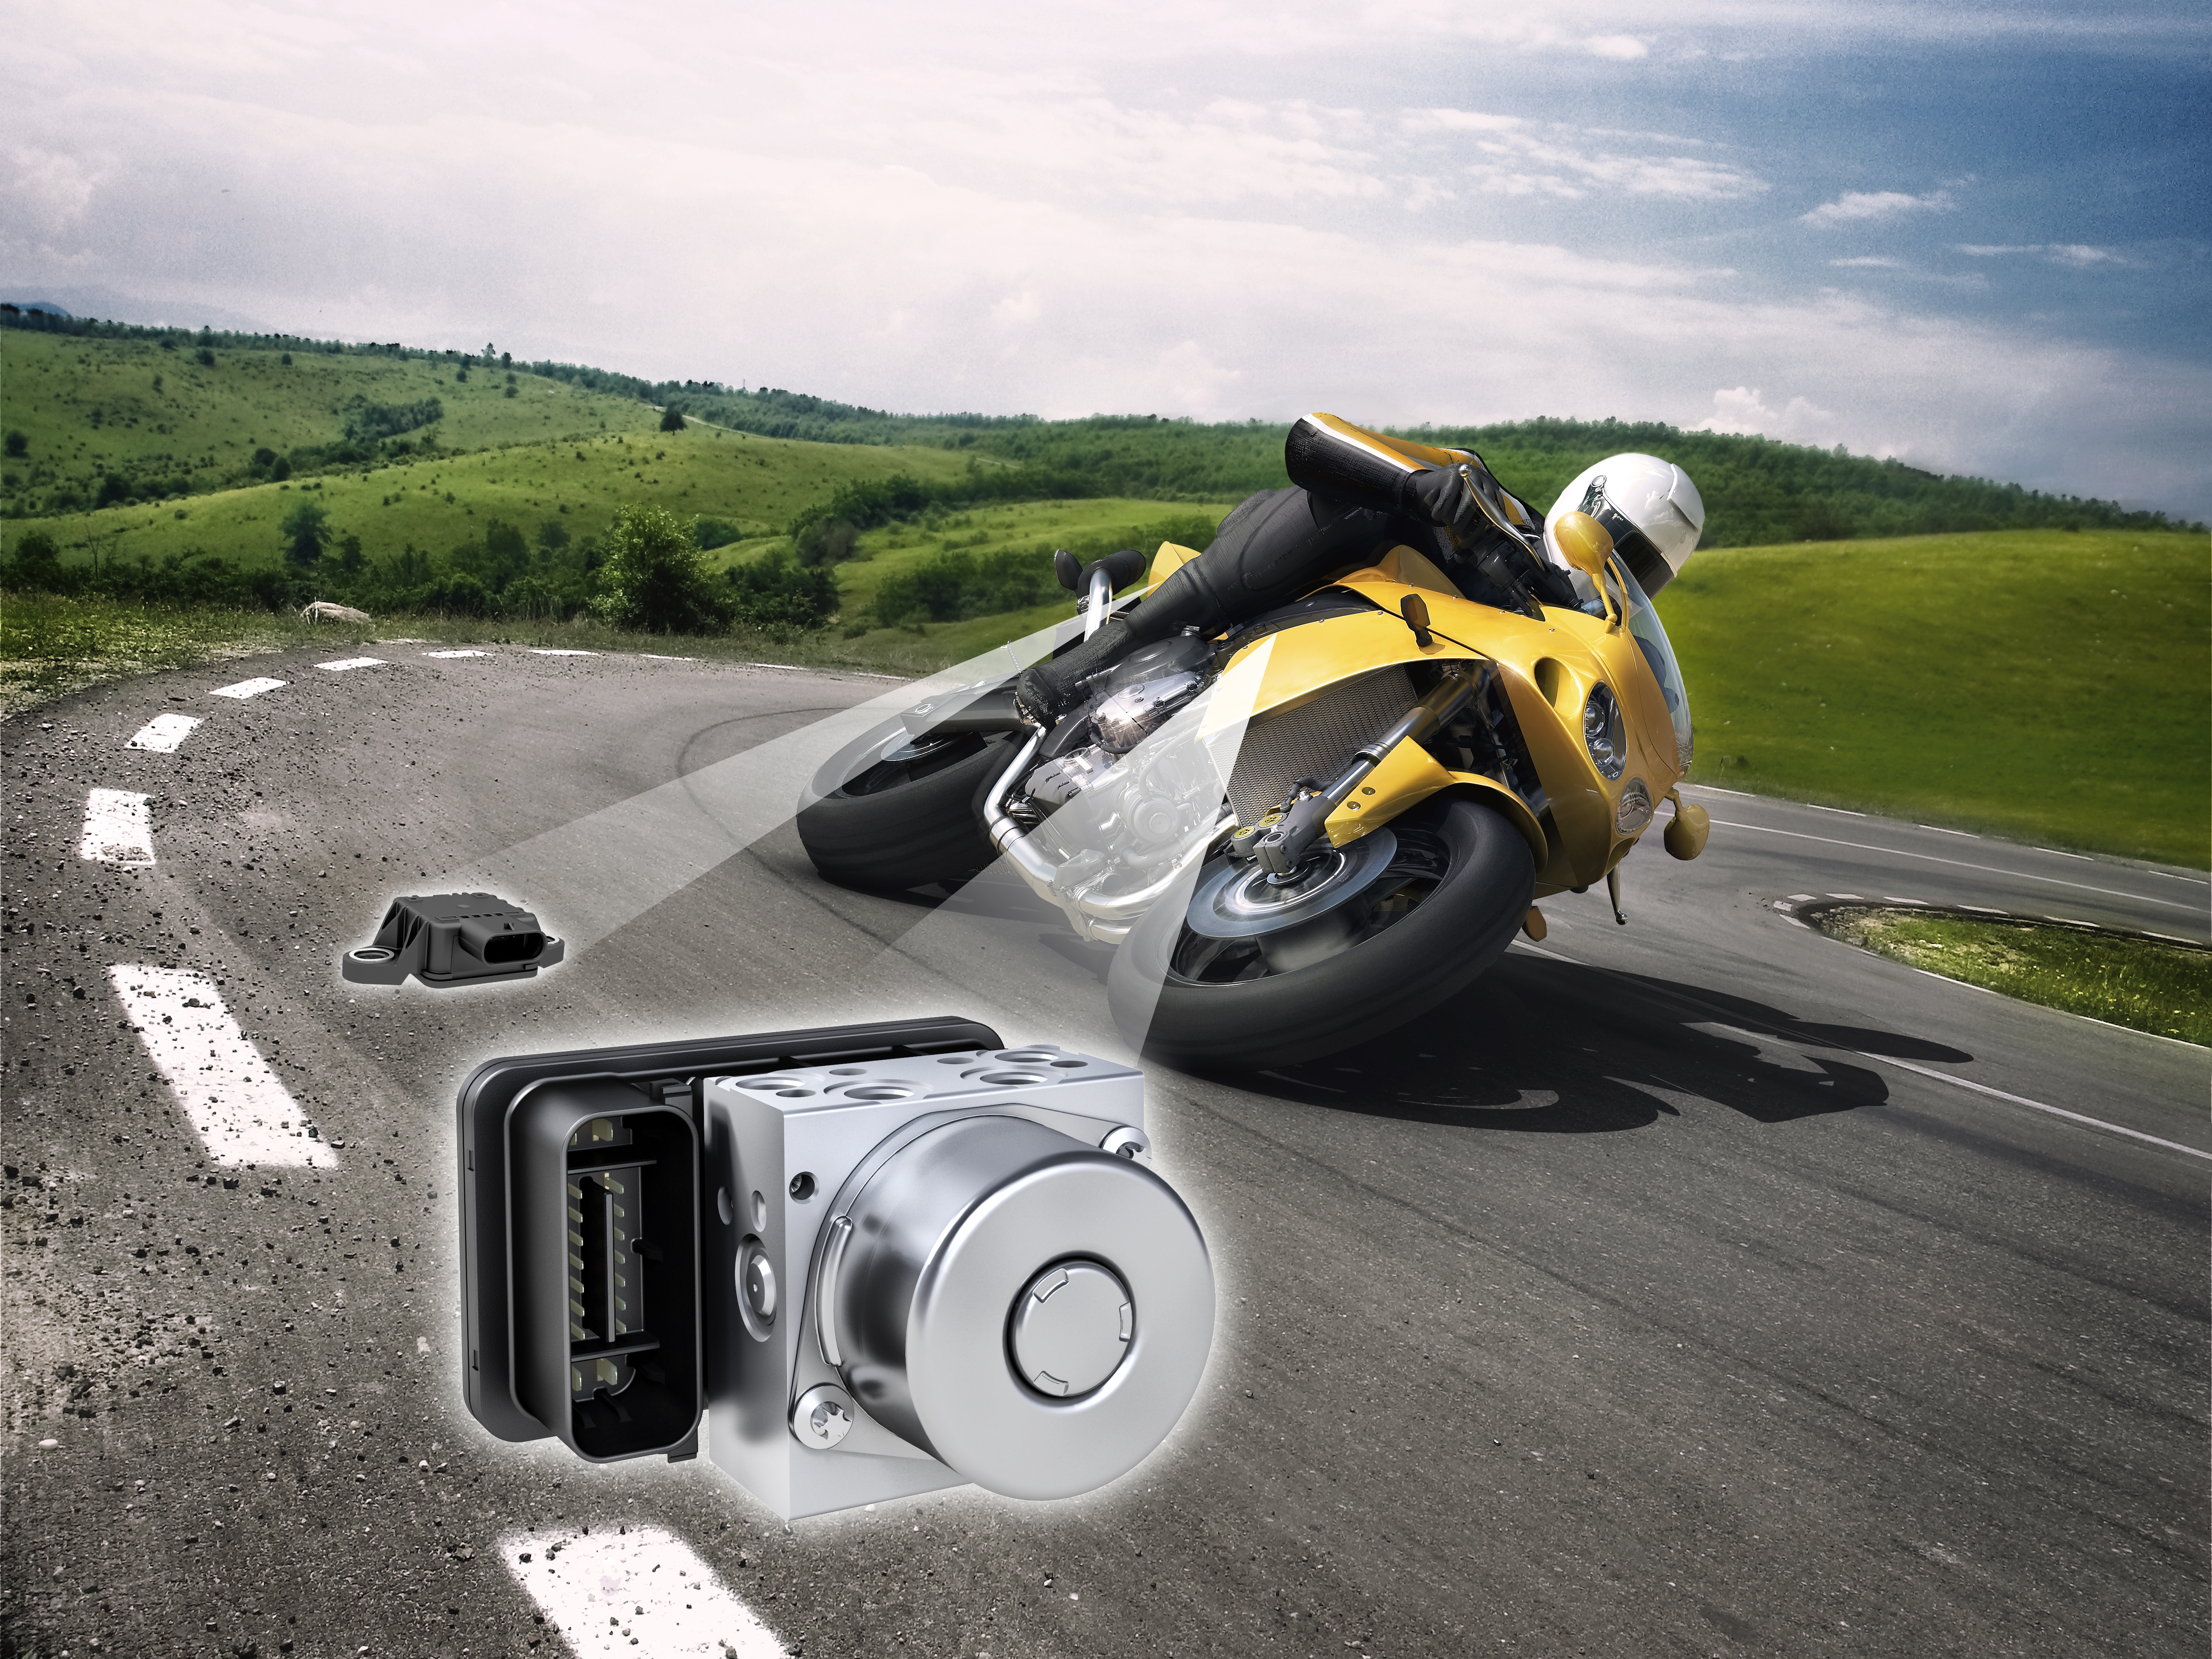 Siguranță sporită pe două roți: inovațiile Bosch pentru motocicletele viitorului